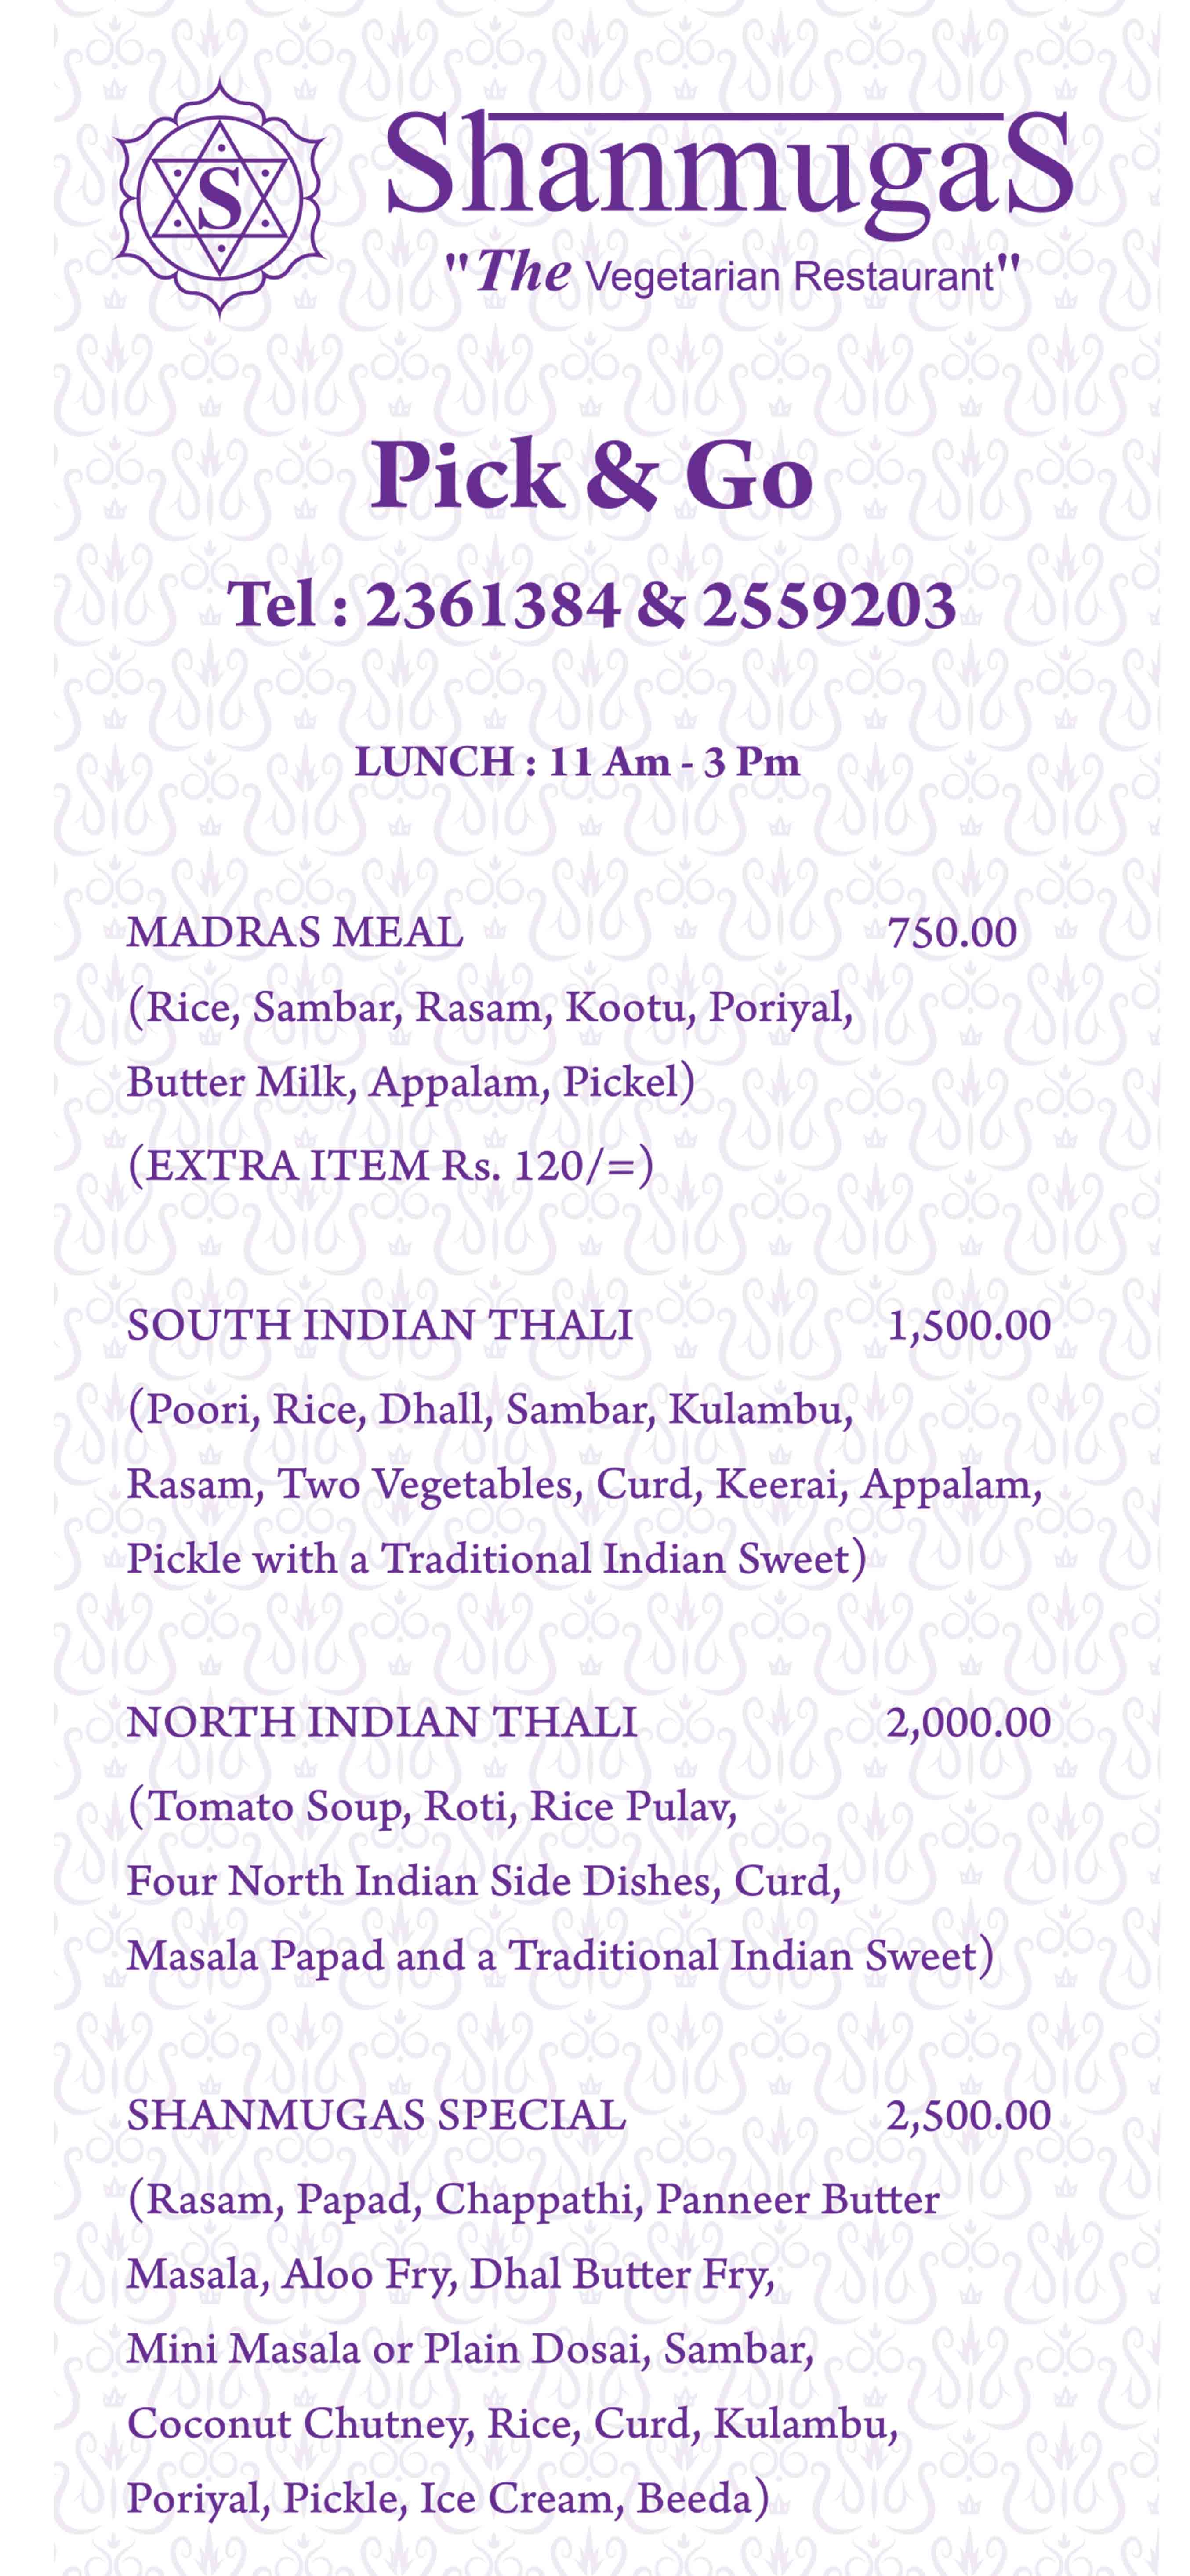 Shanmugas menu